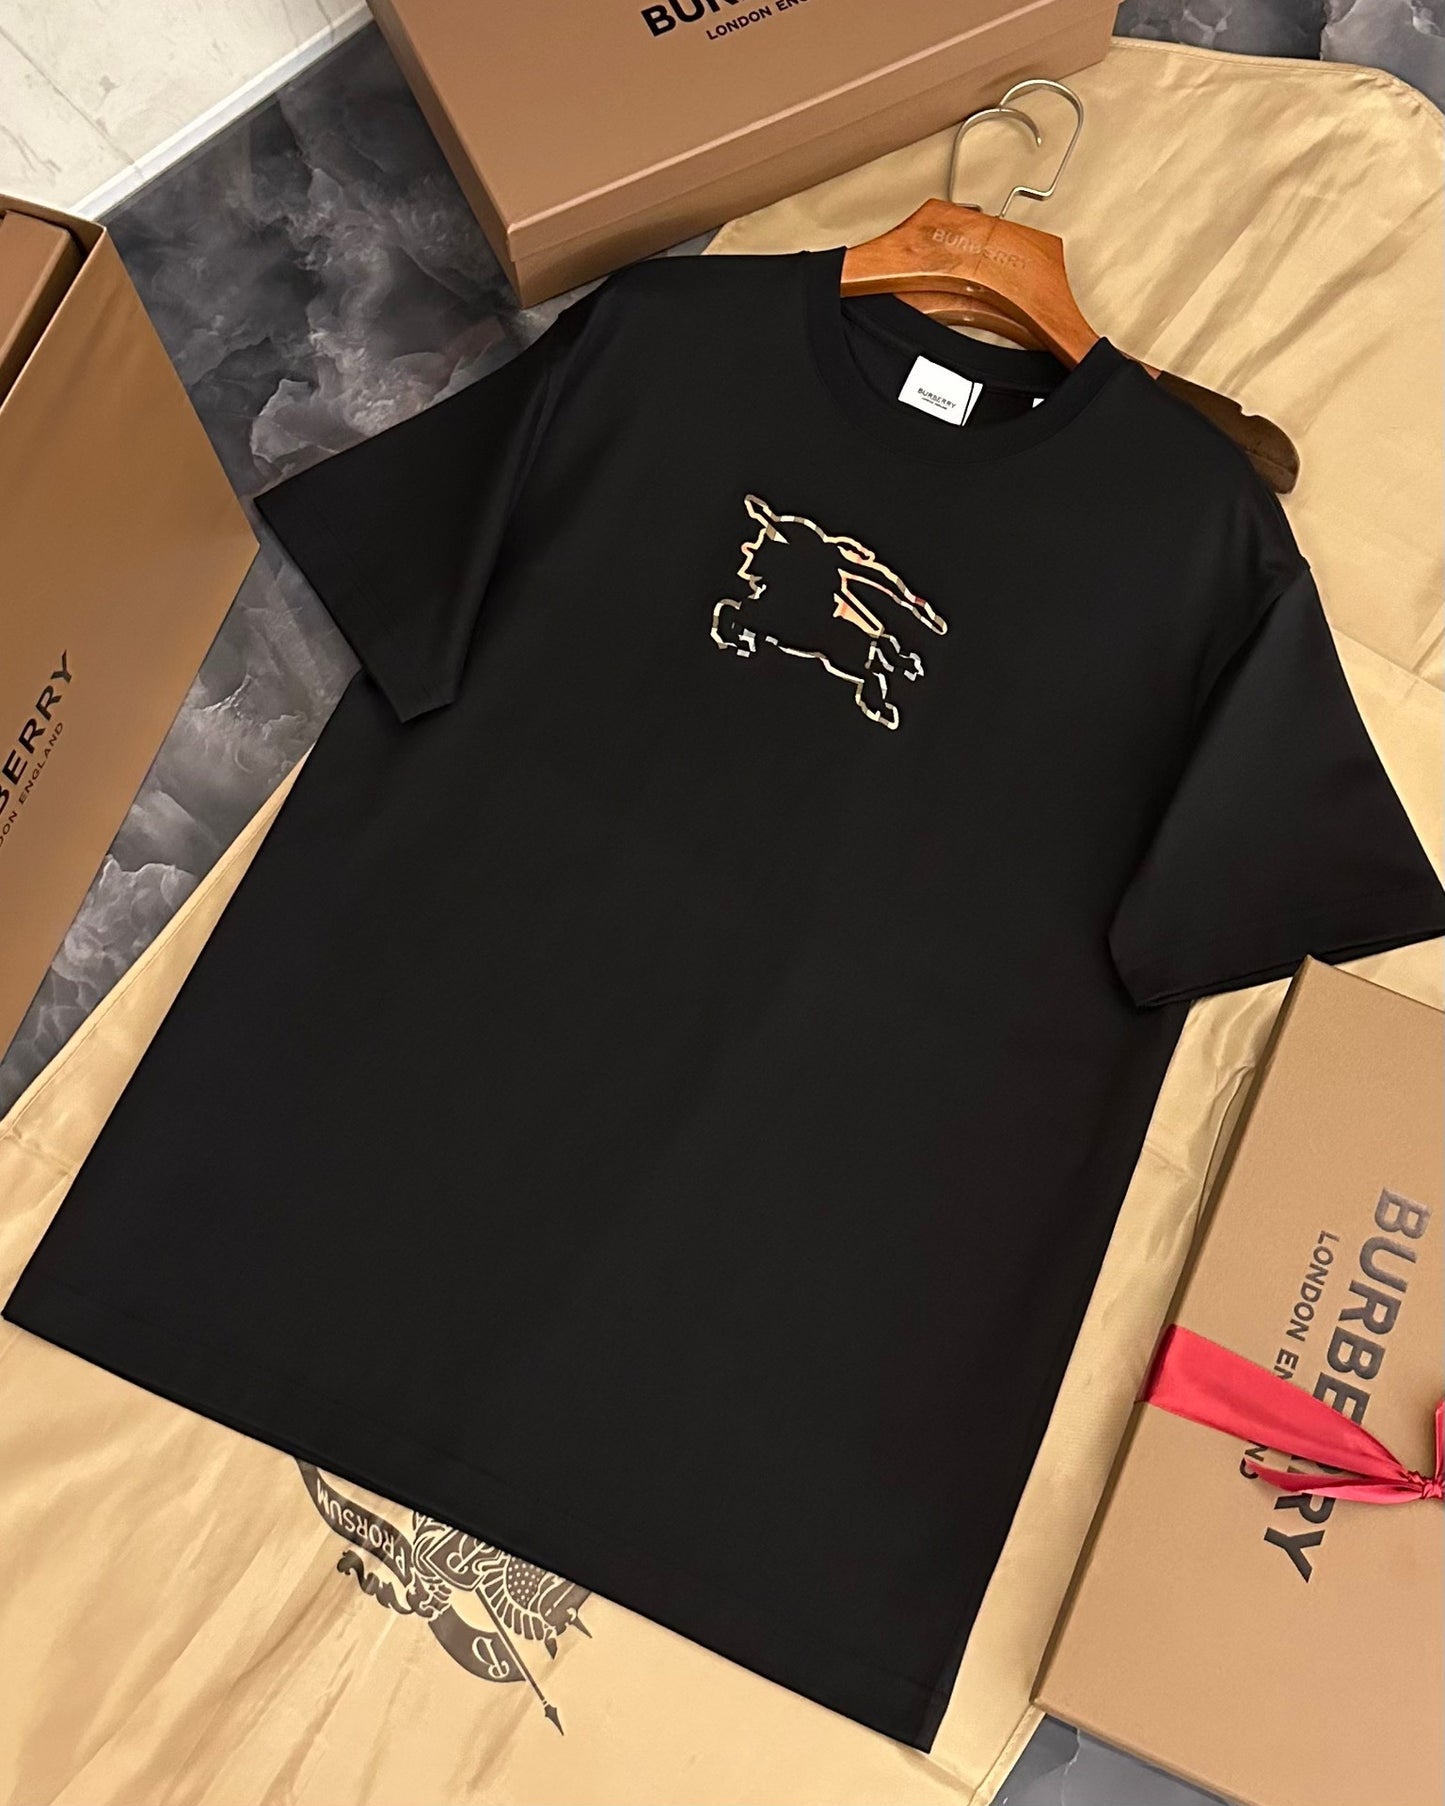 Black and Khaki T-shirt